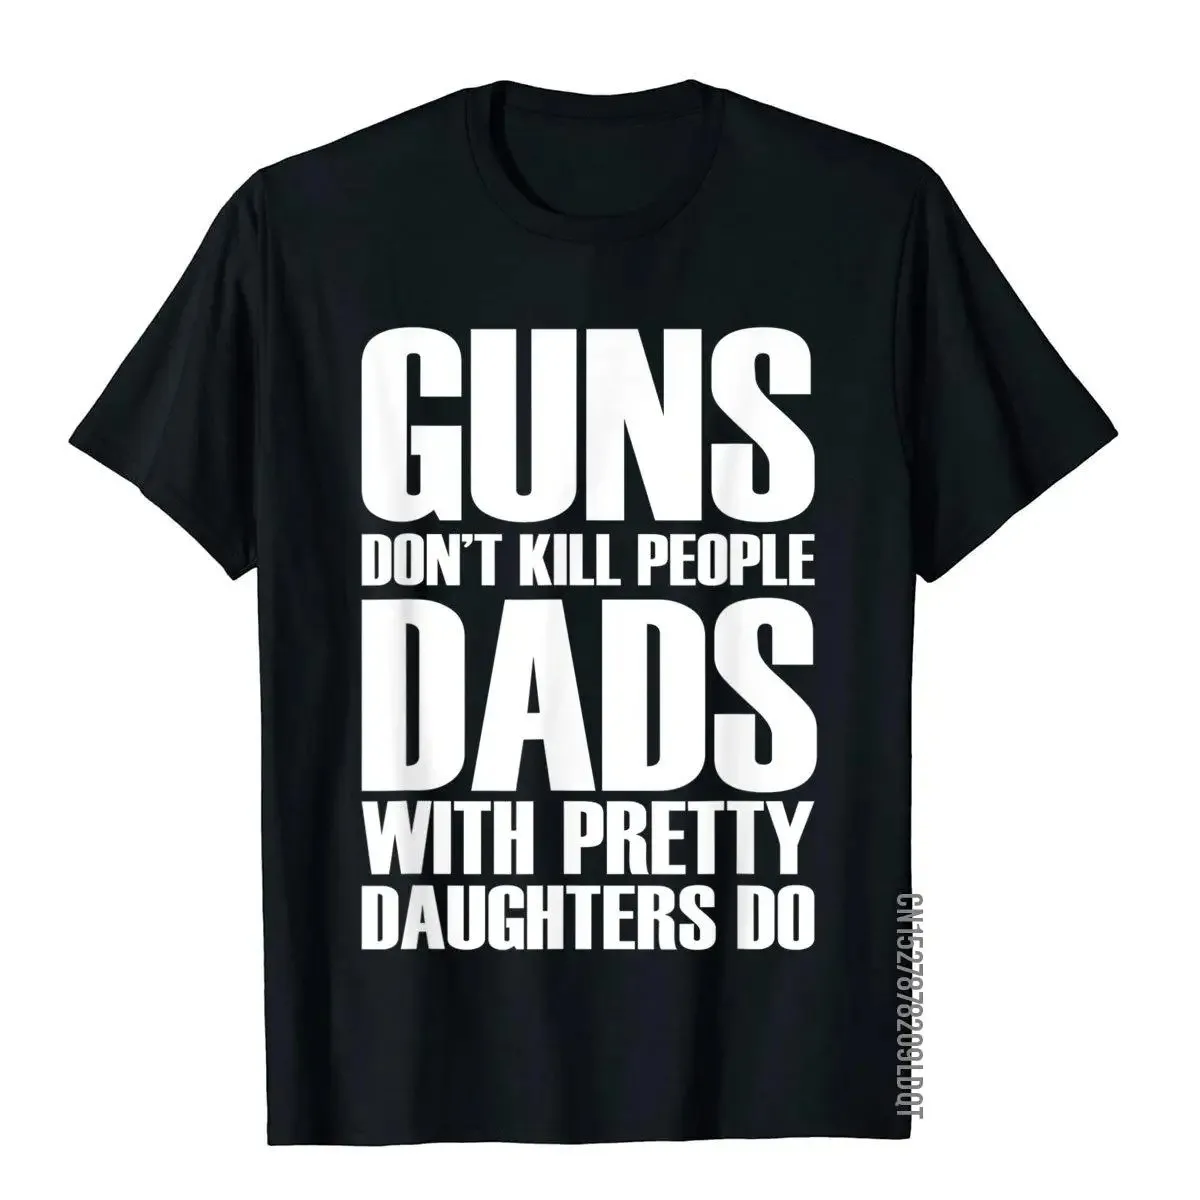 

Мужские футболки Guns't Kill People Dads With Pretty дочери Do, забавные хлопковые мужские Топы И Футболки, Винтажная Футболка с принтом